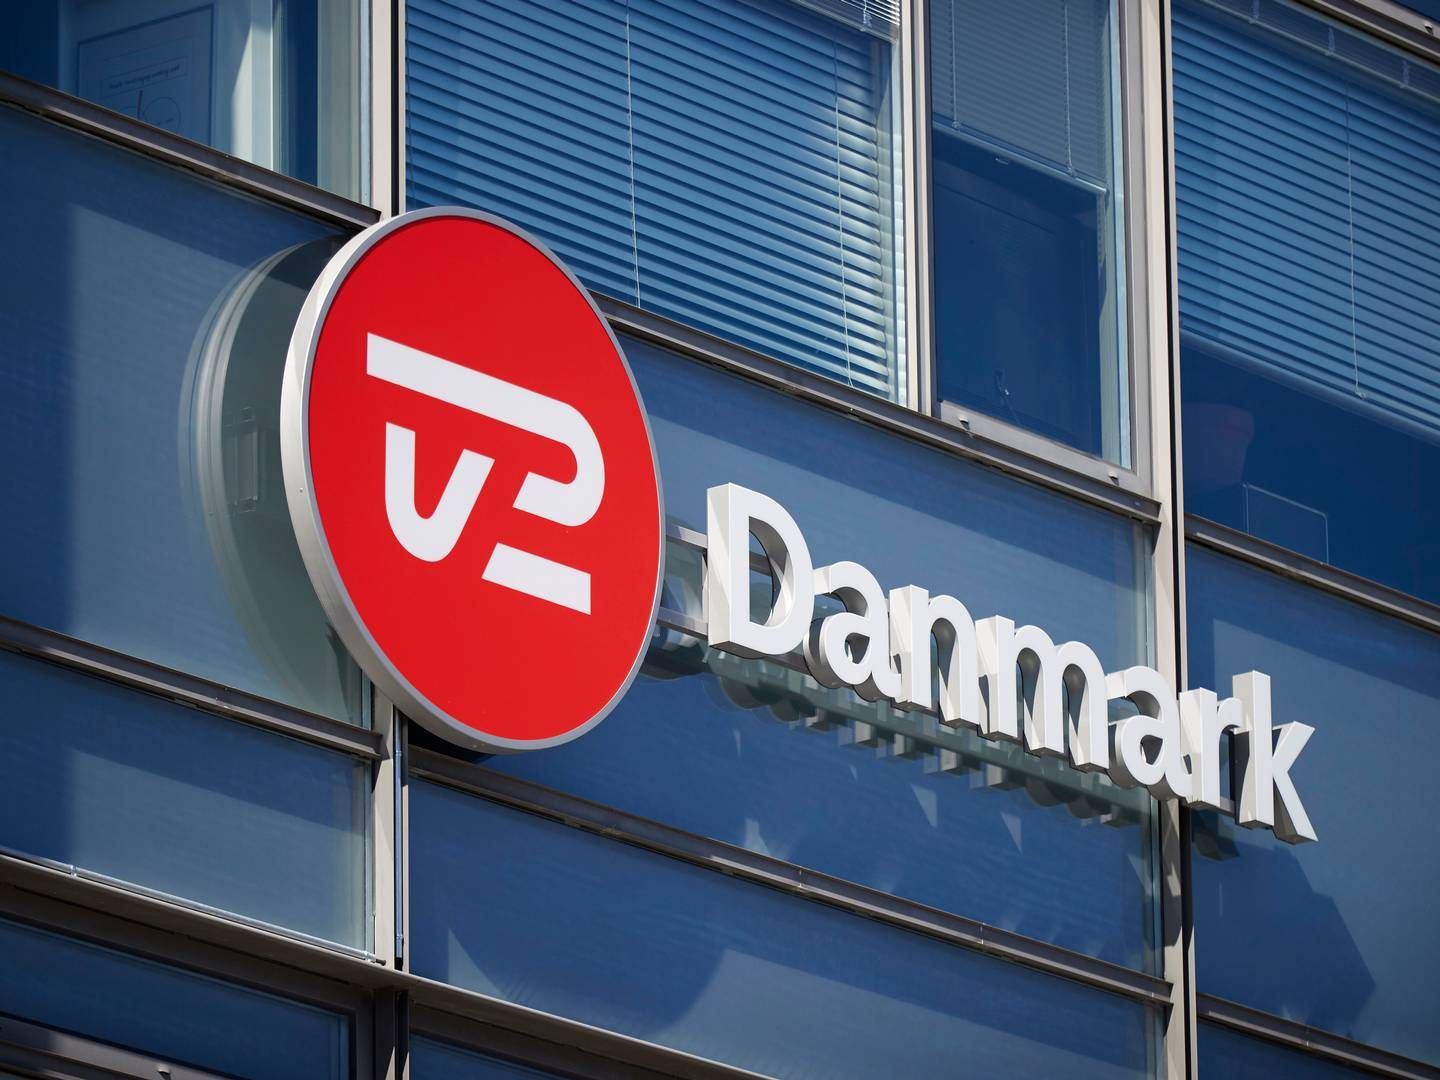 TV 2 er trådt i front som den mest uundværlige betaling-streamingtjeneste i Danmark. | Foto: Jens Dresling/Ritzau Scanpix